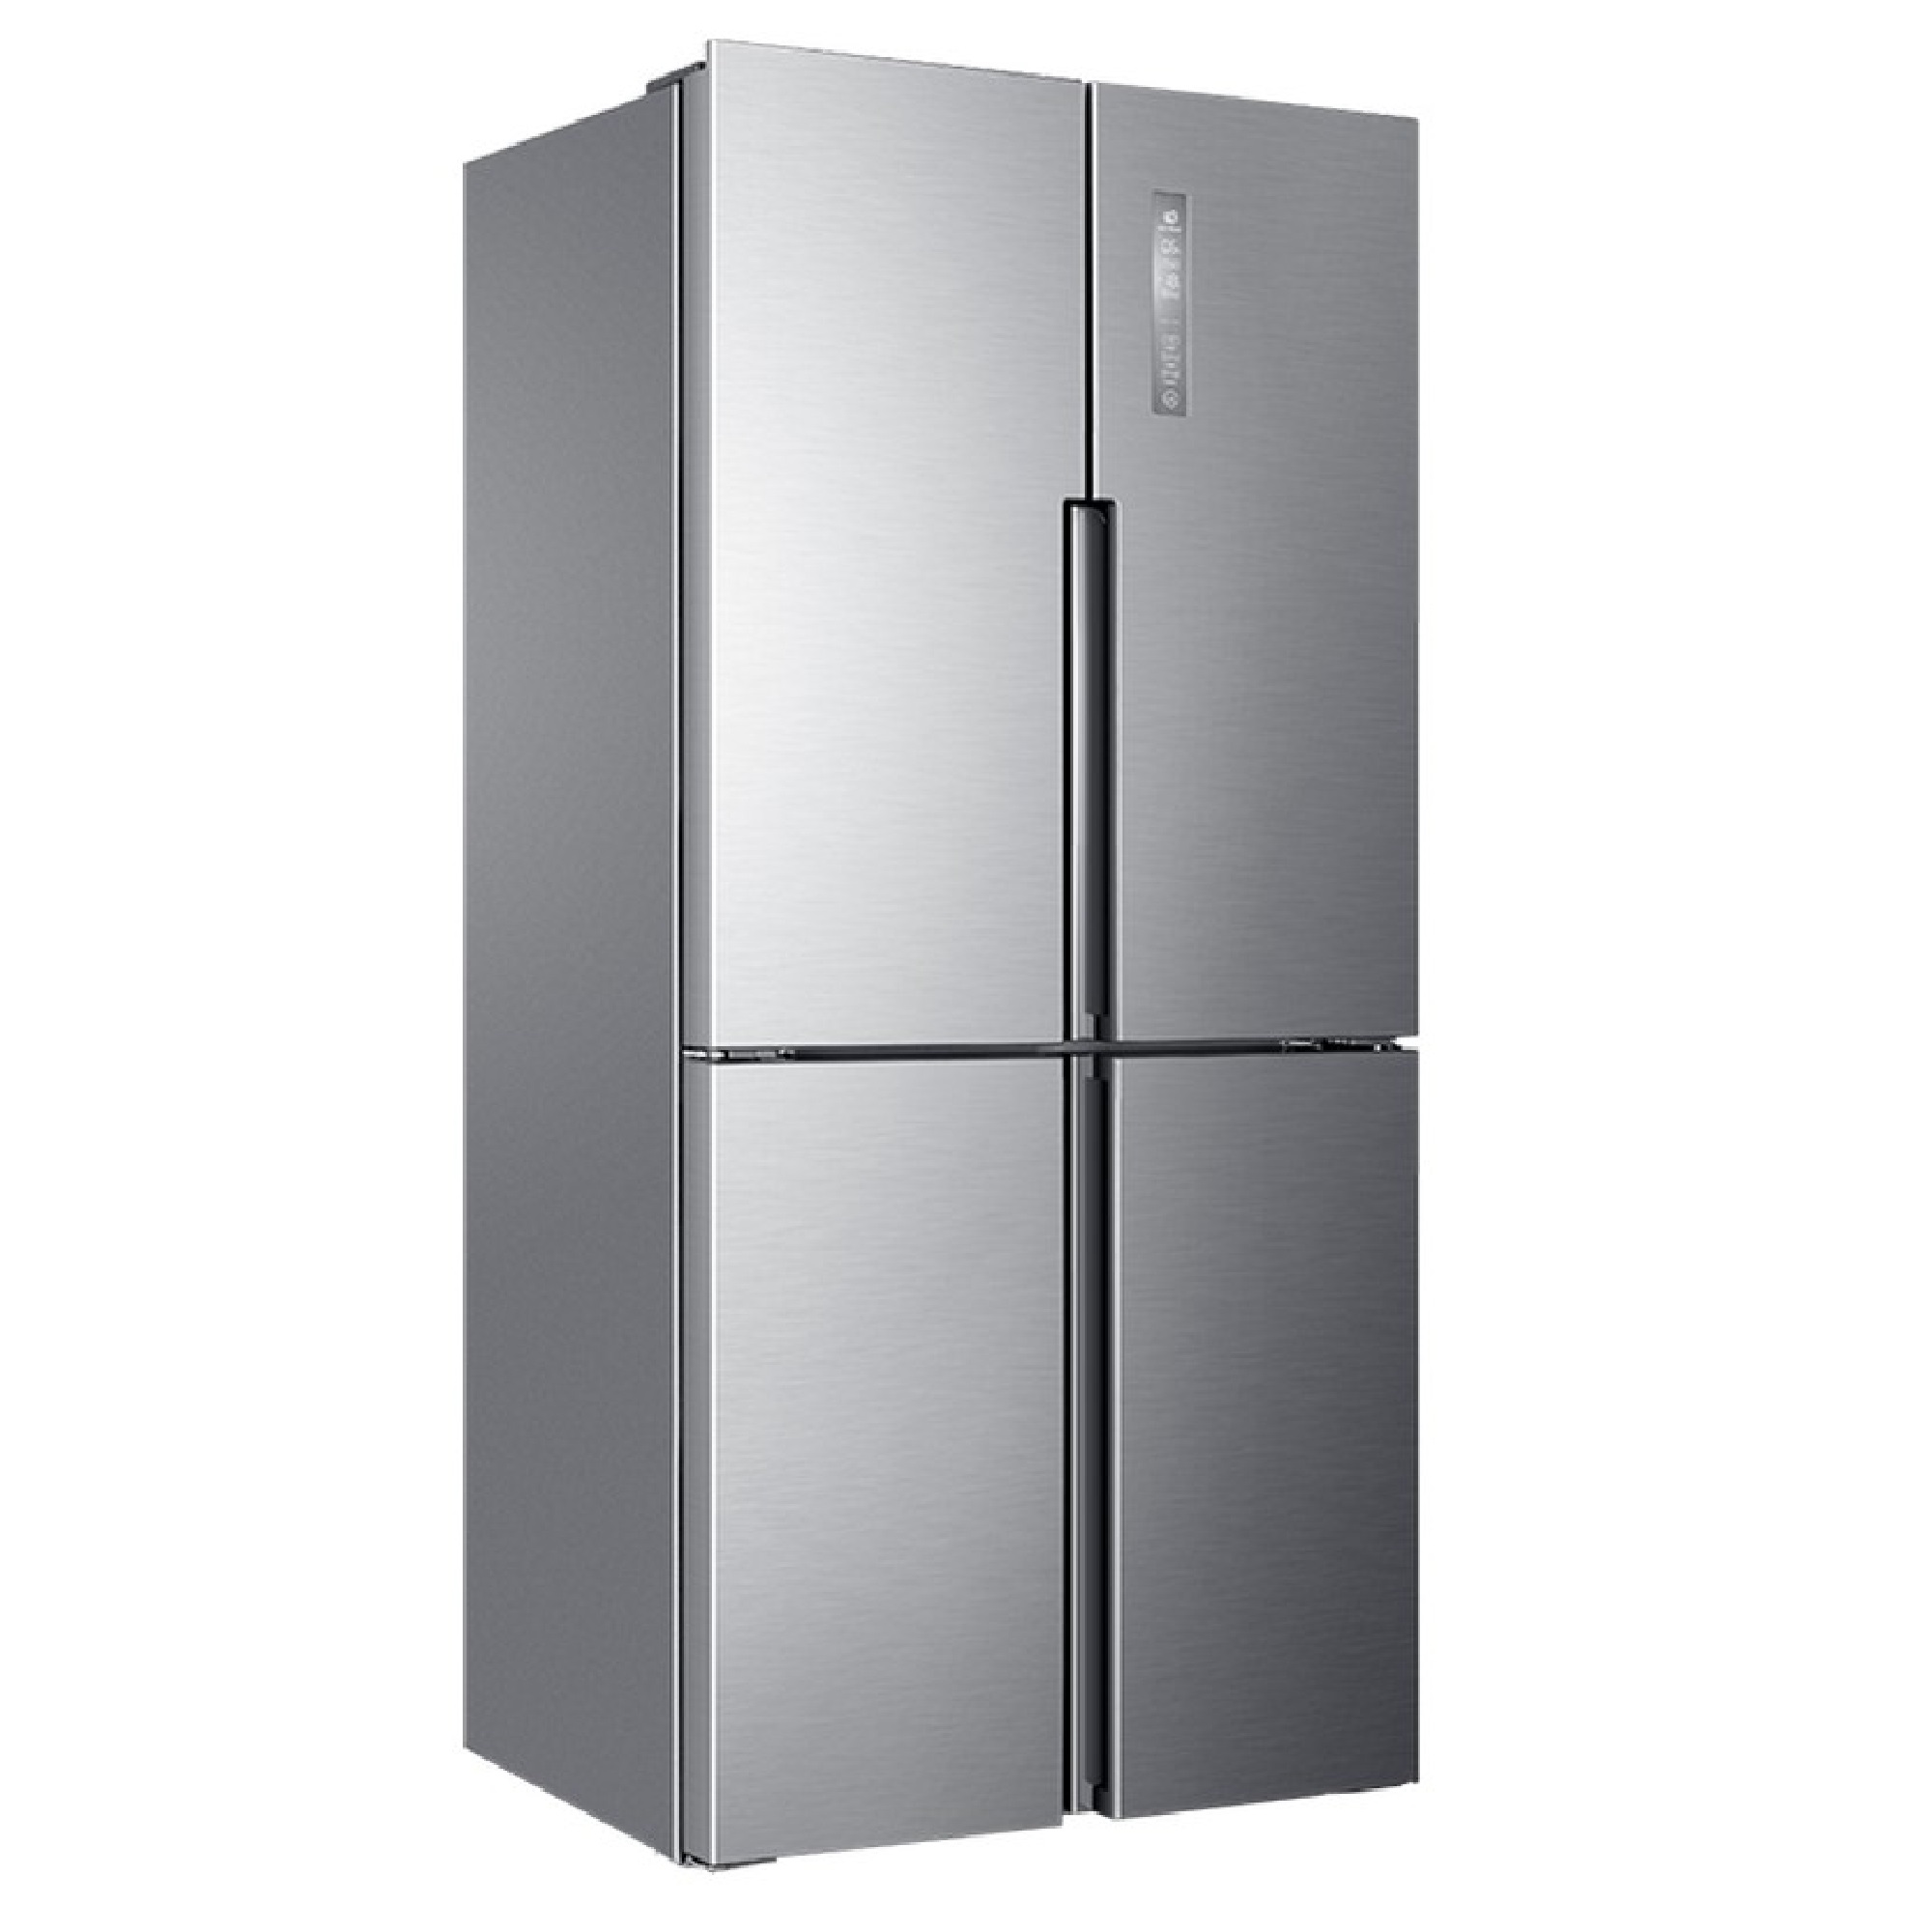 В каких магазинах можно купить холодильники. Холодильник многодверный Haier HTF-456dm6ru. Холодильник (Side-by-Side) Haier HRF-541dg7ru. Холодильник Haier Side by Side. Холодильник Хаер HTF 456dm6ru.